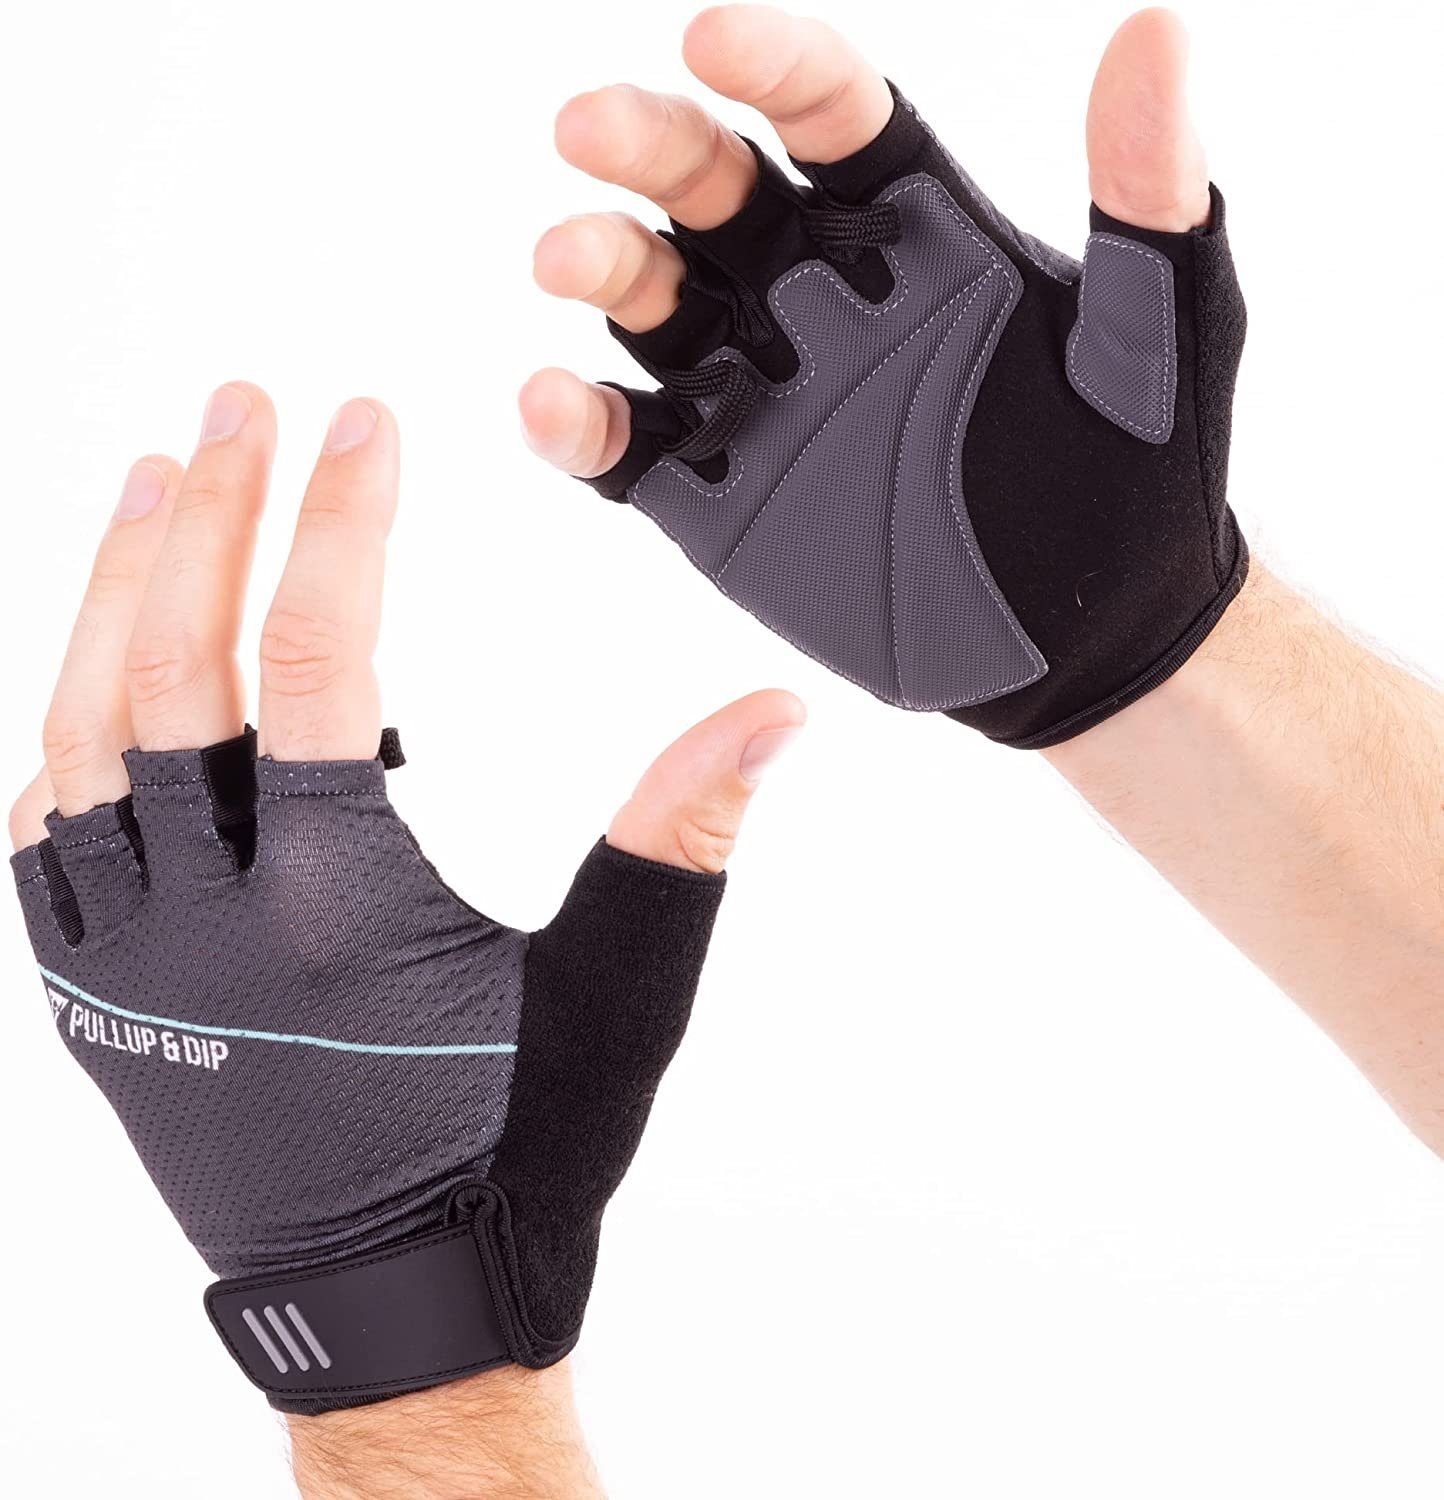 Silikon Rutschfeste Handfläche SKDK Trainingshandschuh Schwielen Schützt Hände vor Rissen ideal für Kraft-Sport und Turn-Übungen sowie Cross-Training 